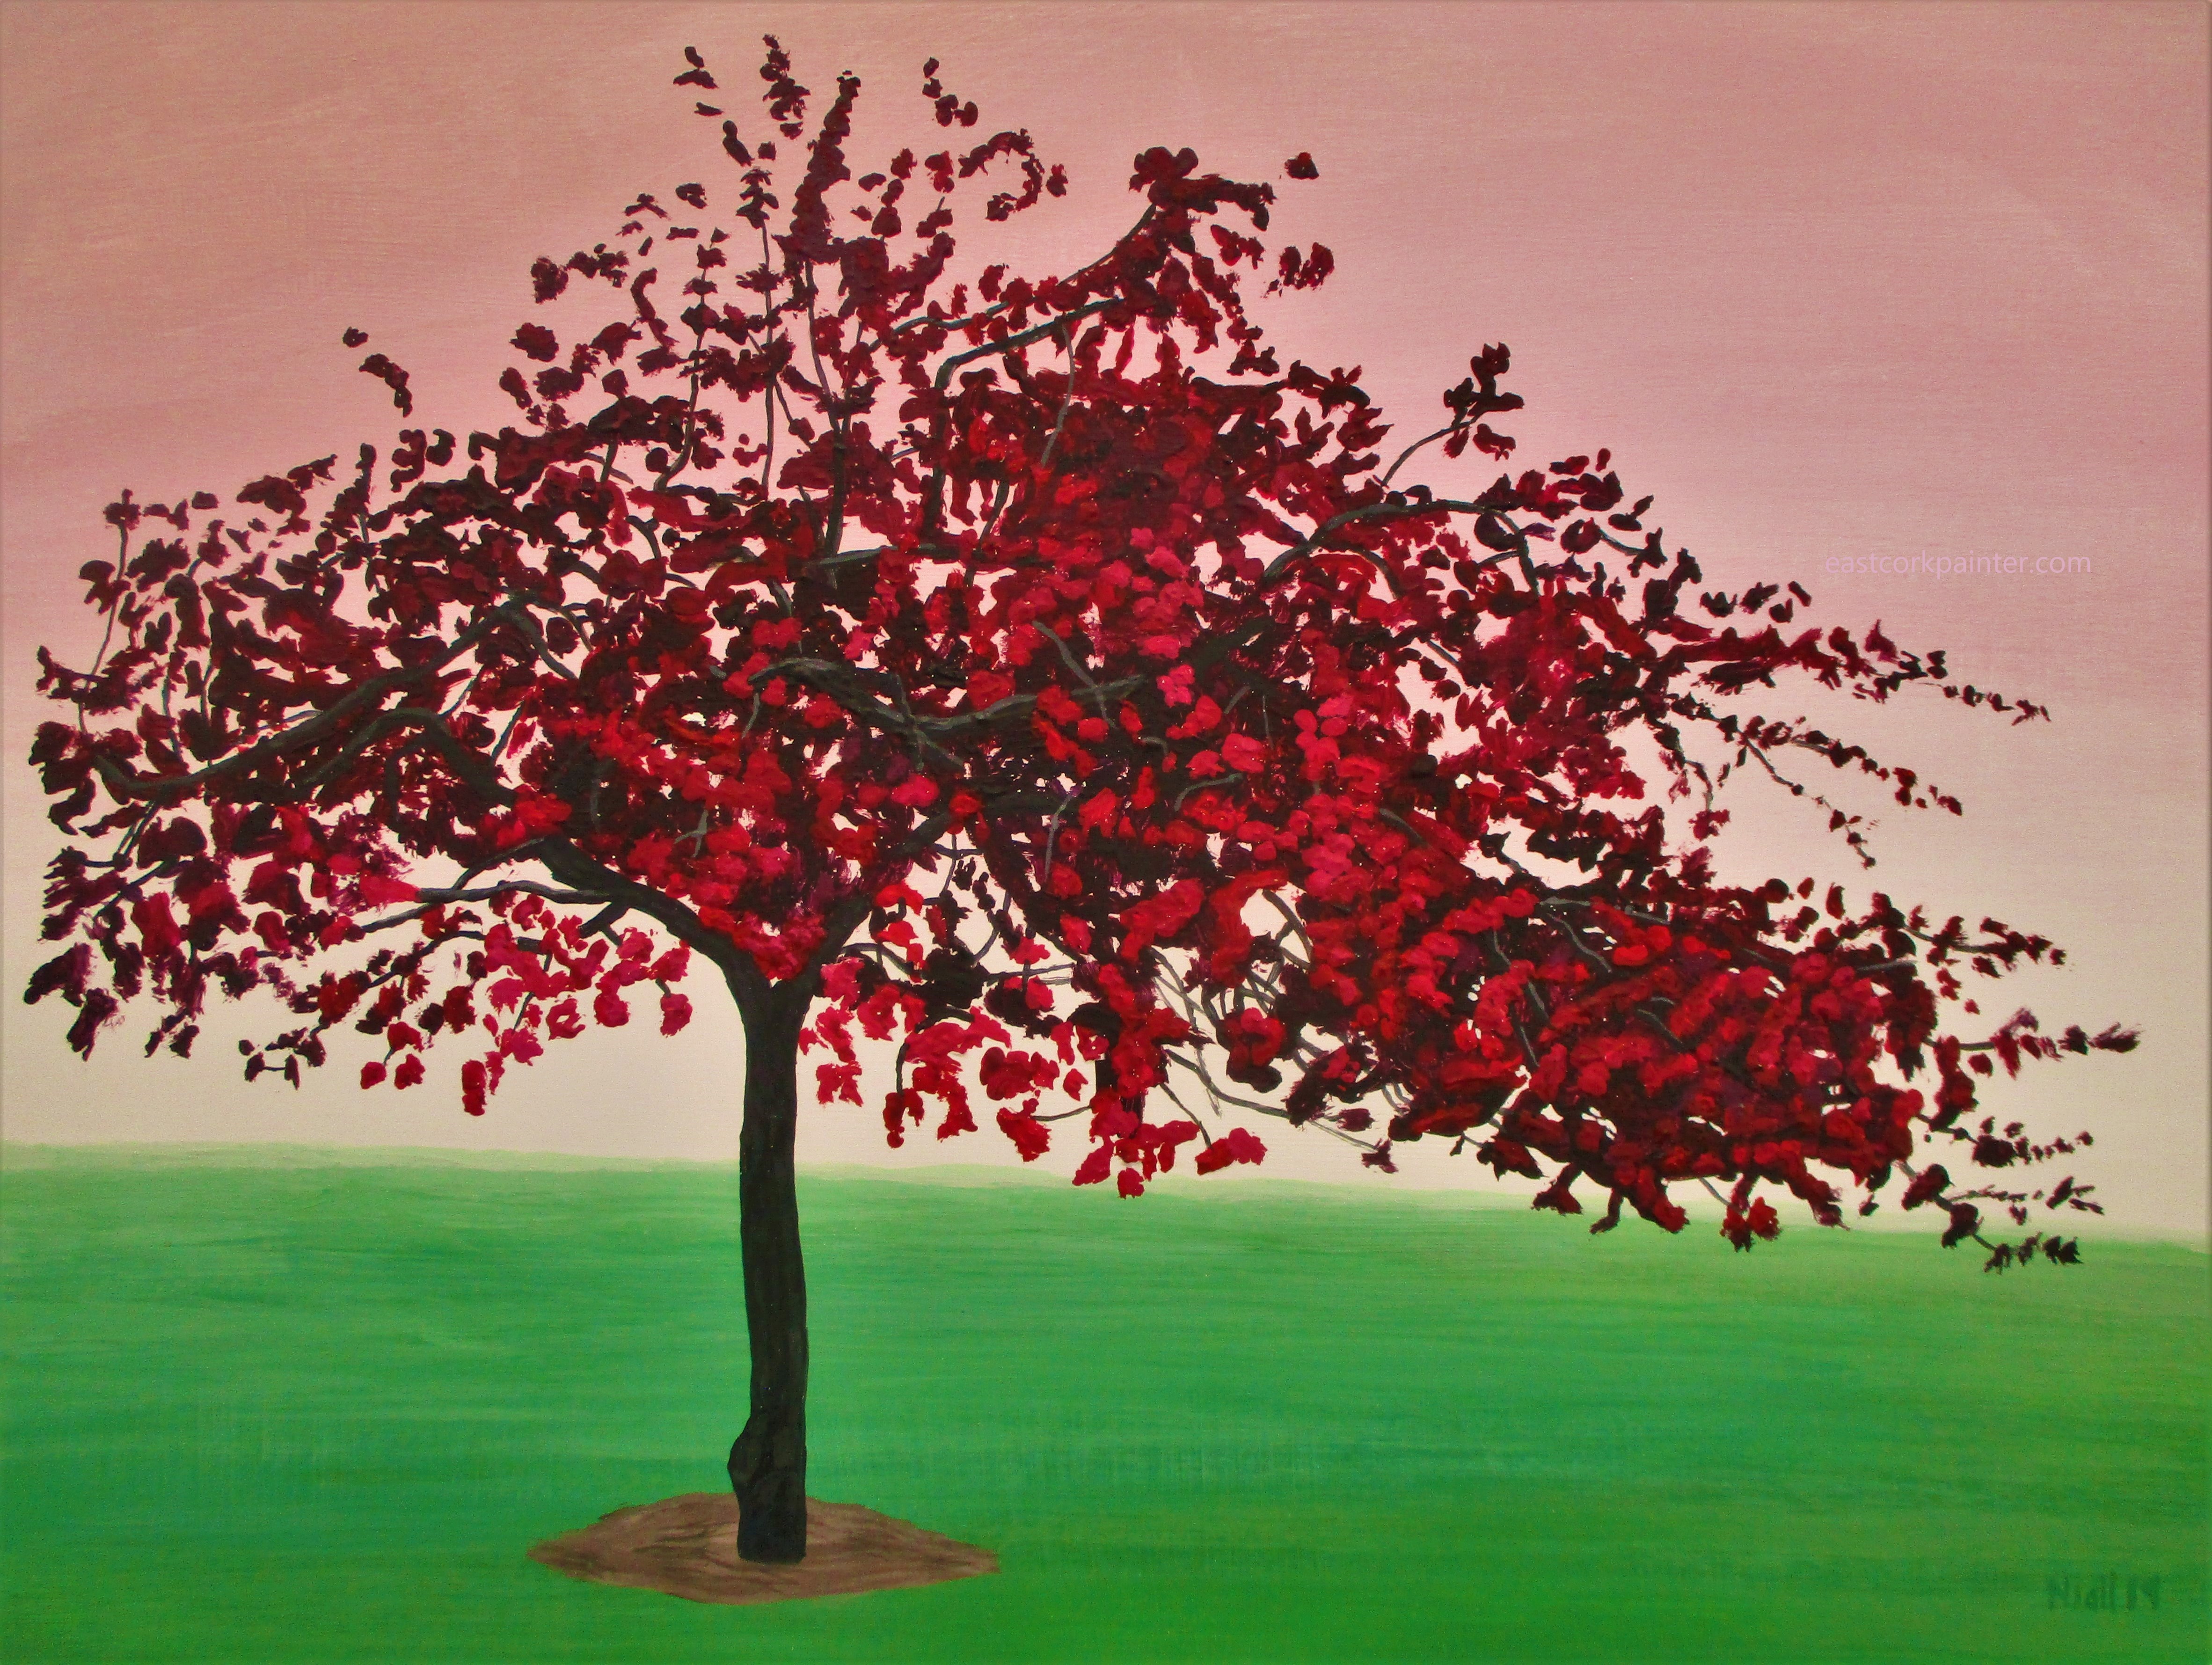 Crimson Blossomed Tree insta